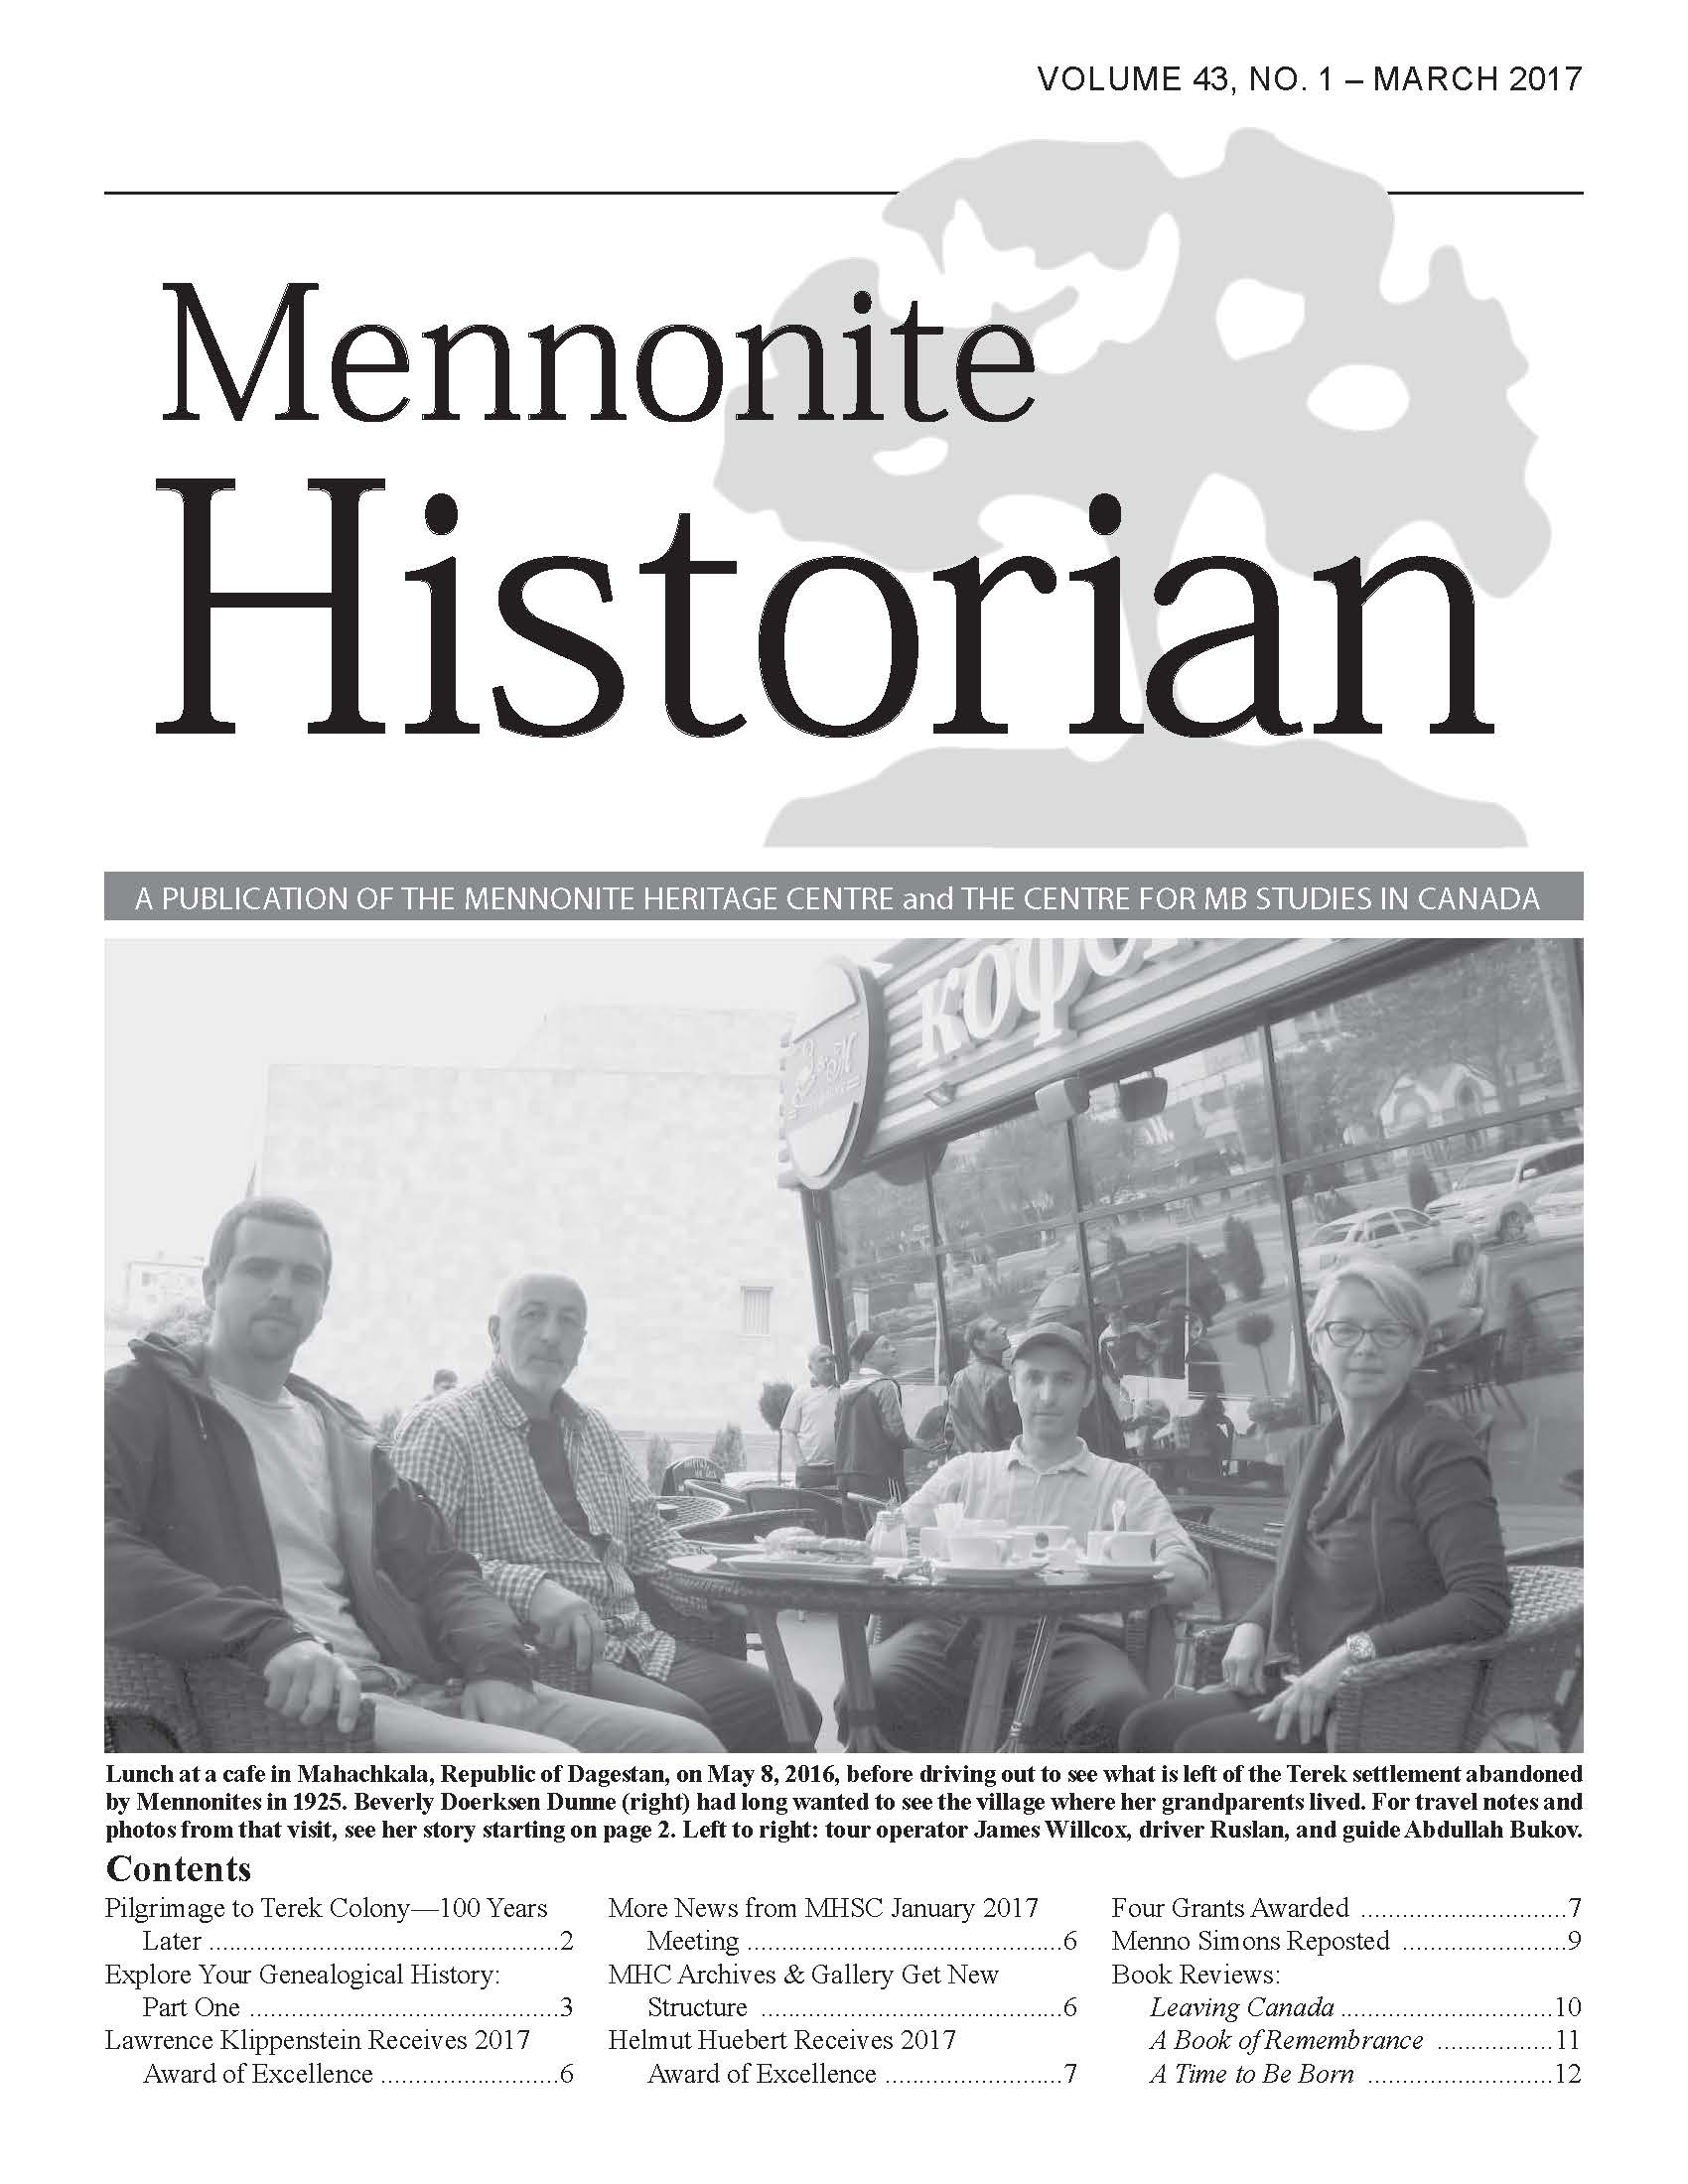 Mennonite Historian (March 2017)